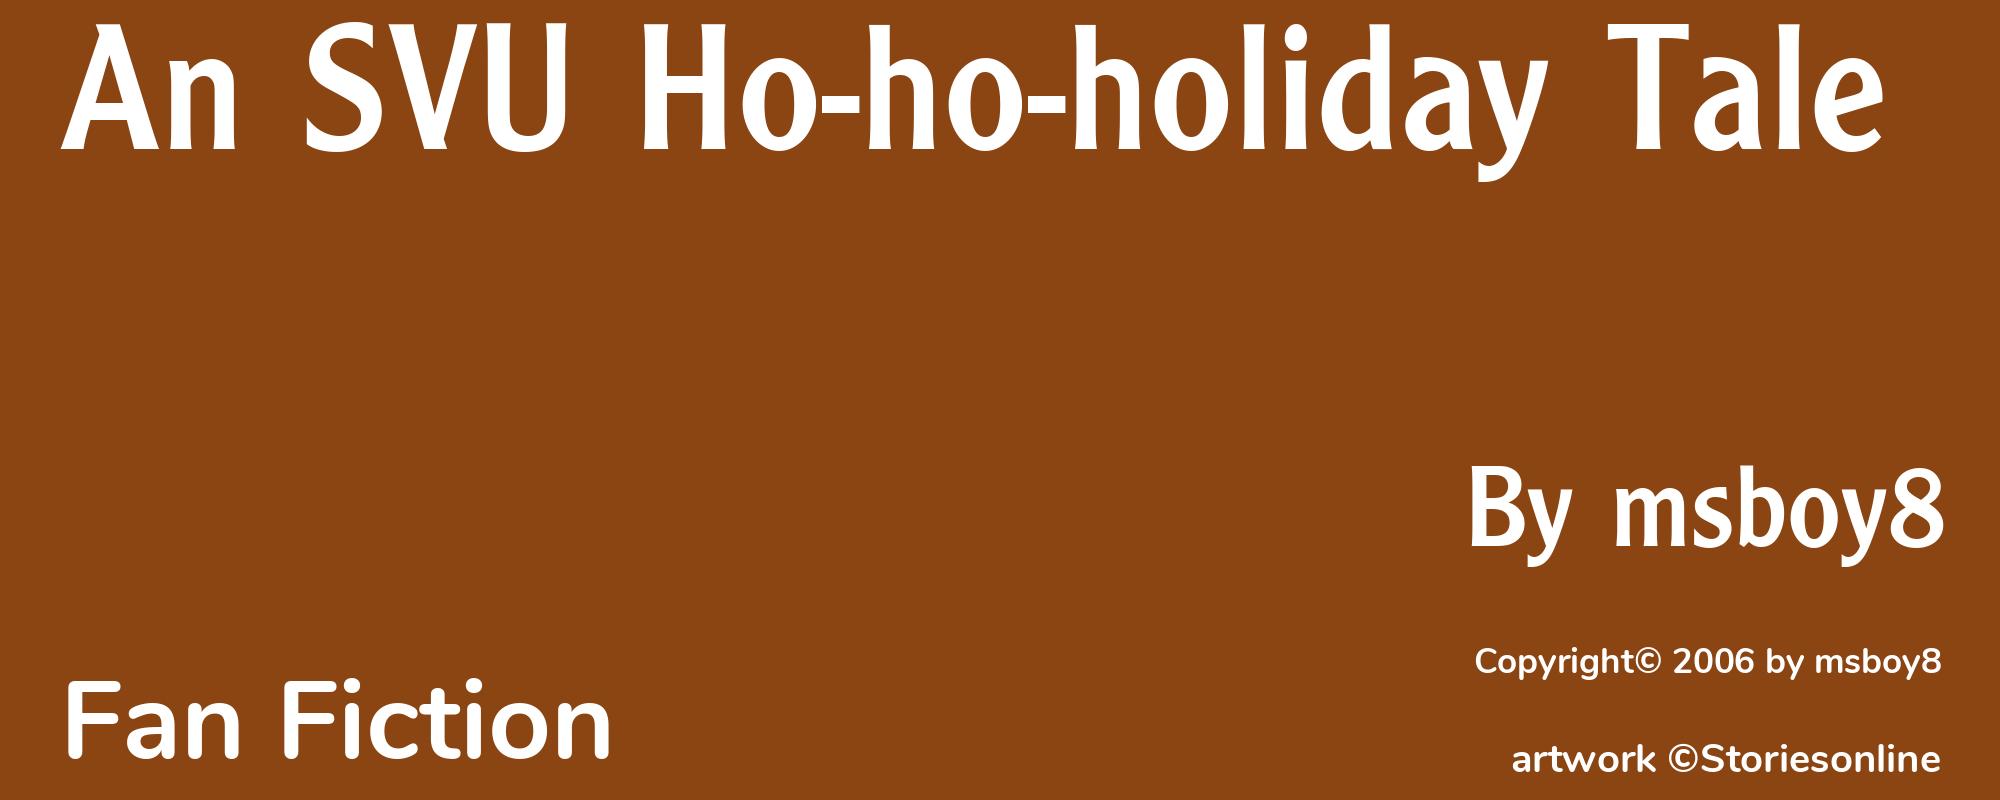 An SVU Ho-ho-holiday Tale - Cover